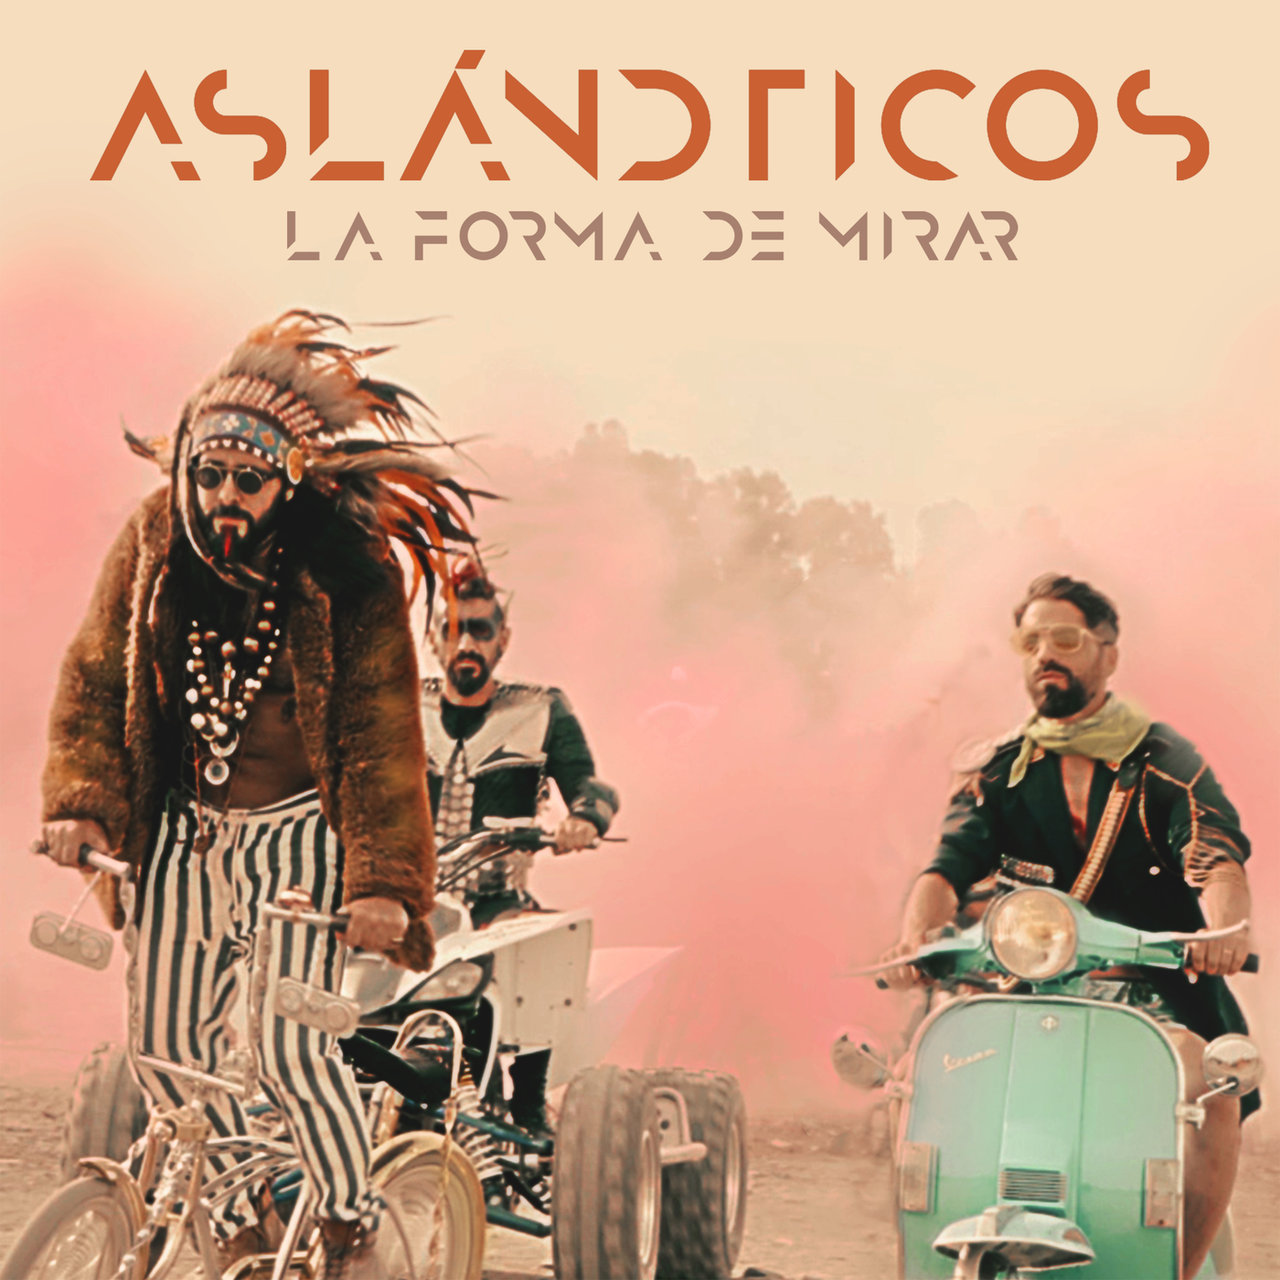 Los Aslándticos — La Forma de Mirar cover artwork